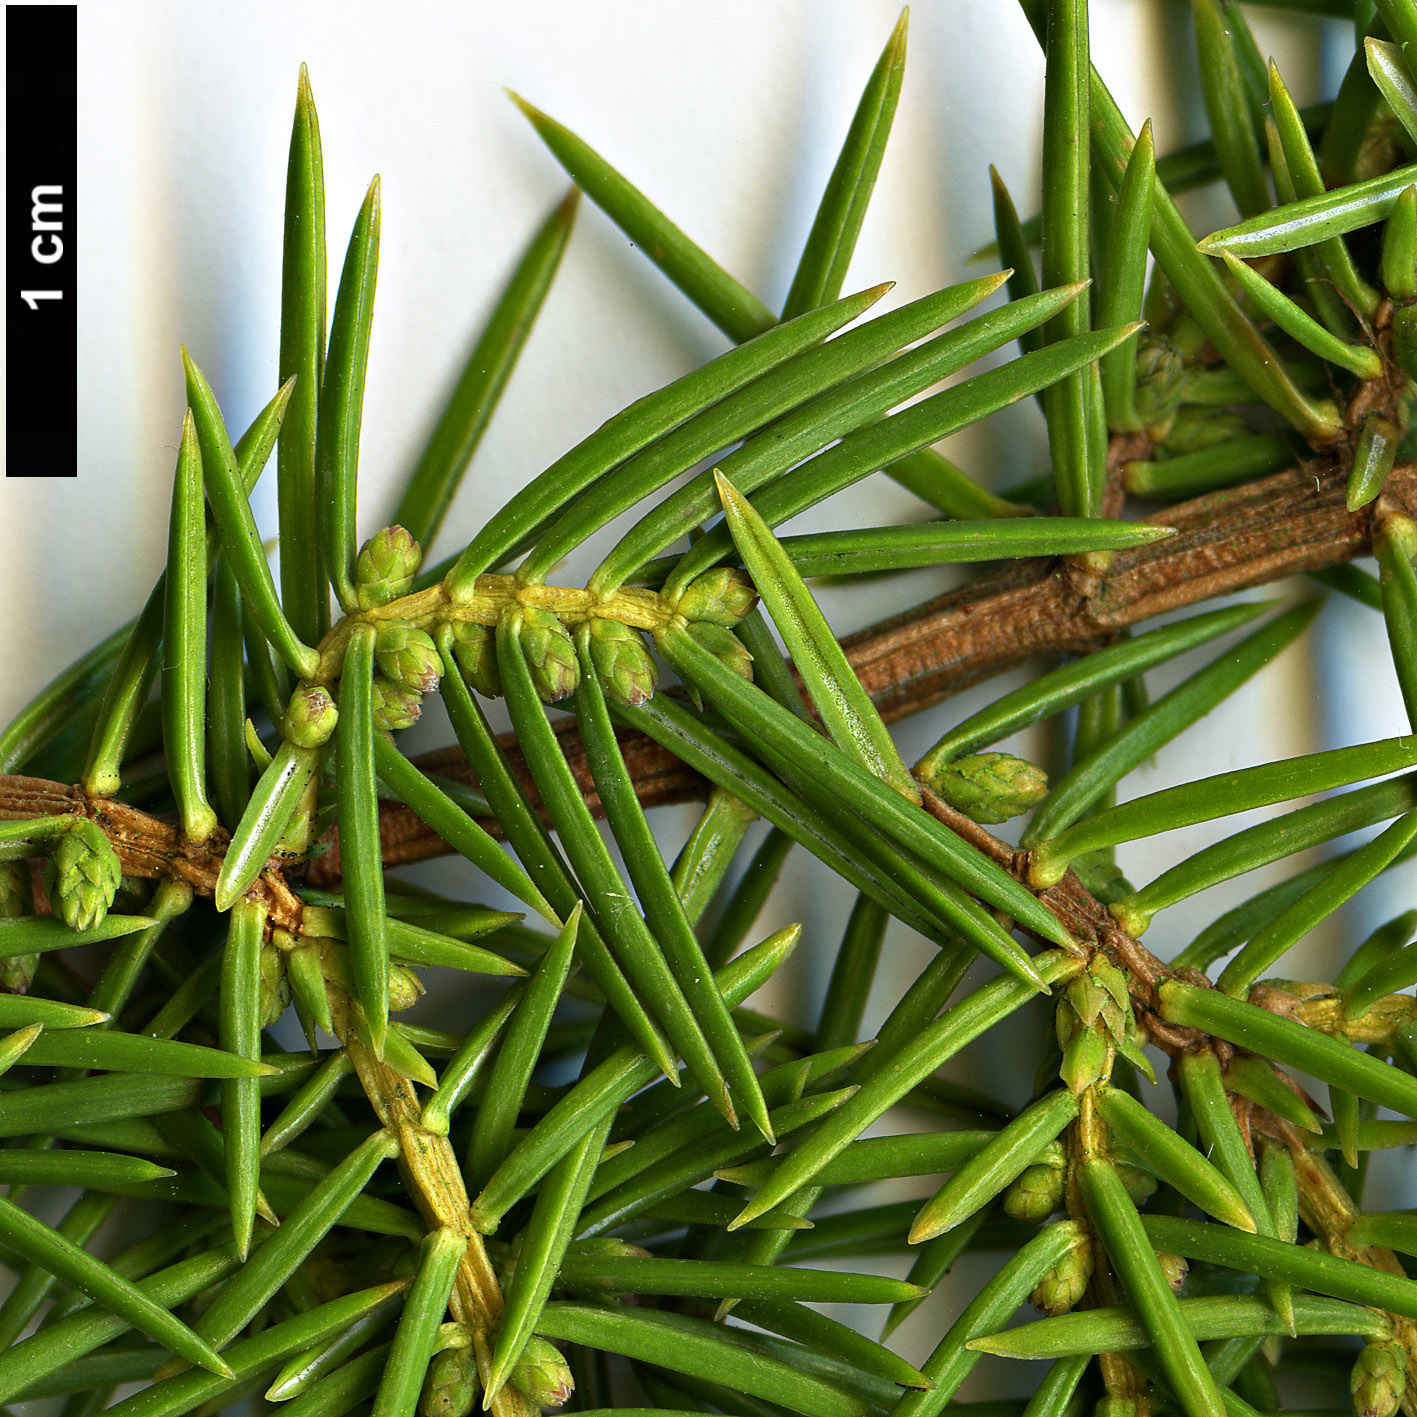 High resolution image: Family: Cupressaceae - Genus: Juniperus - Taxon: rigida